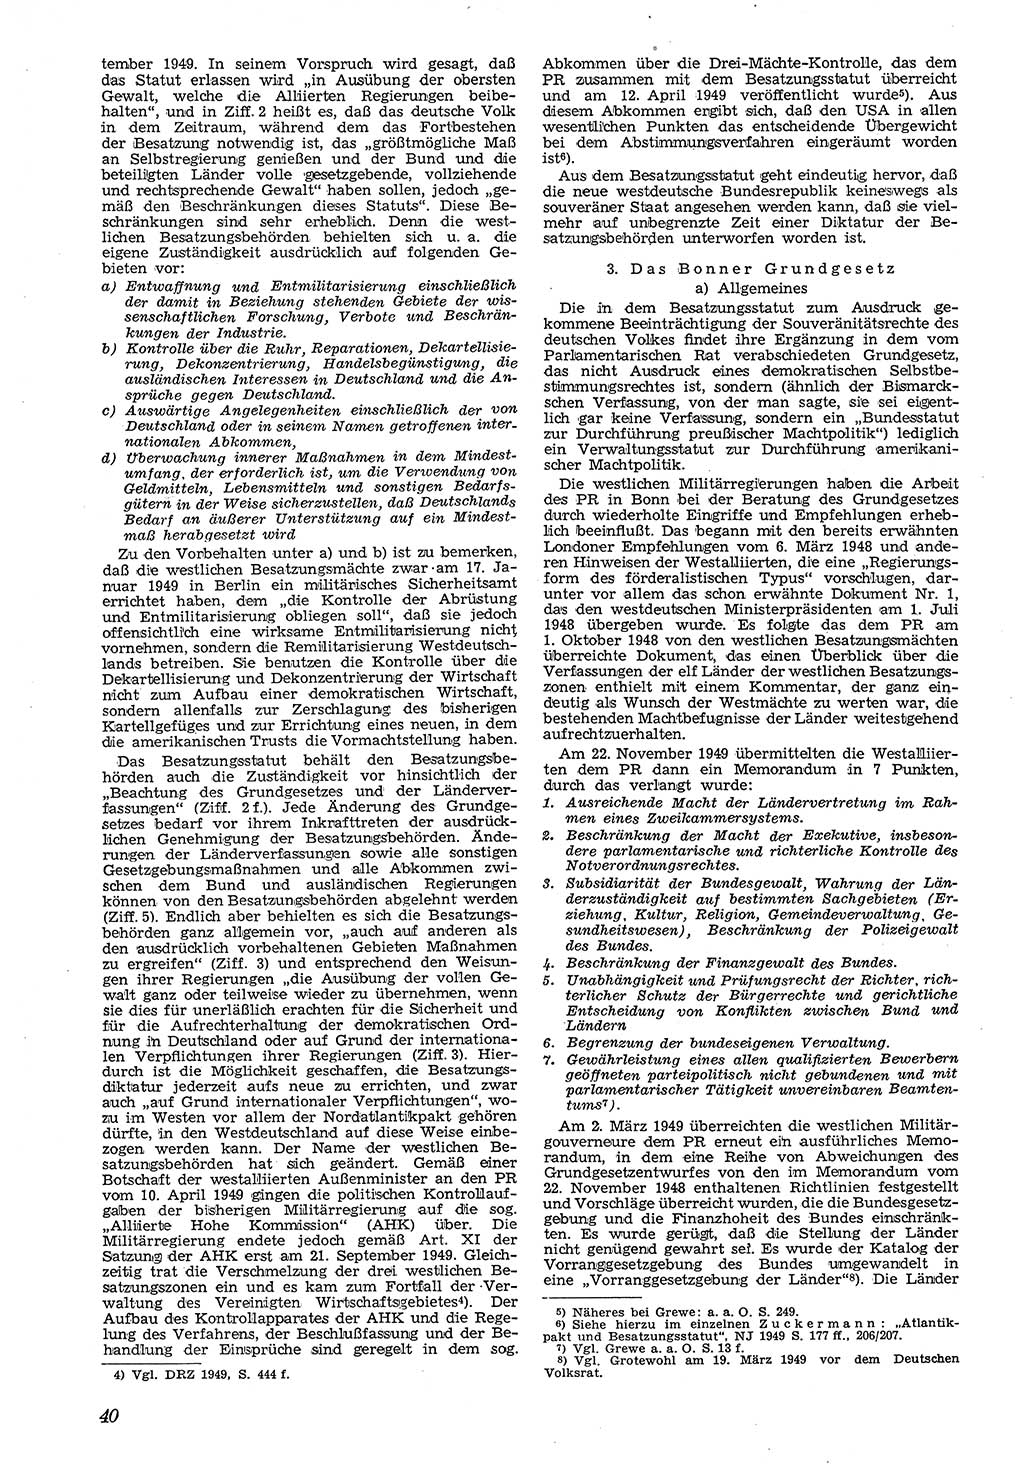 Neue Justiz (NJ), Zeitschrift für Recht und Rechtswissenschaft [Deutsche Demokratische Republik (DDR)], 4. Jahrgang 1950, Seite 40 (NJ DDR 1950, S. 40)